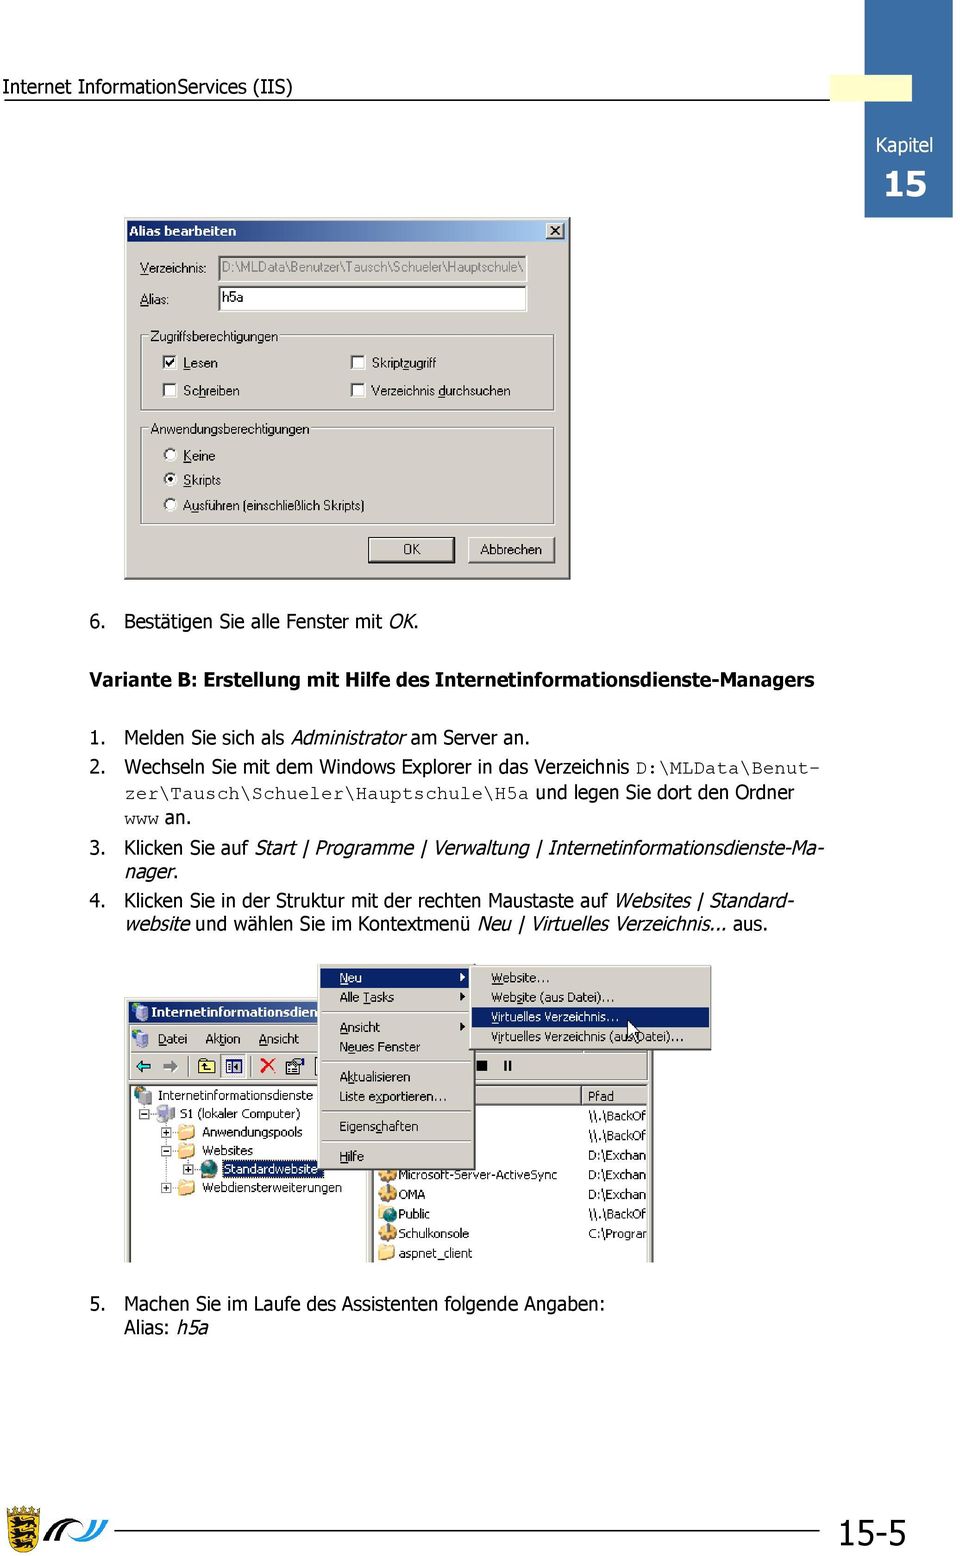 Wechseln Sie mit dem Windows Explorer in das Verzeichnis D:\MLData\Benutzer\Tausch\Schueler\Hauptschule\H5a und legen Sie dort den Ordner www an. 3.